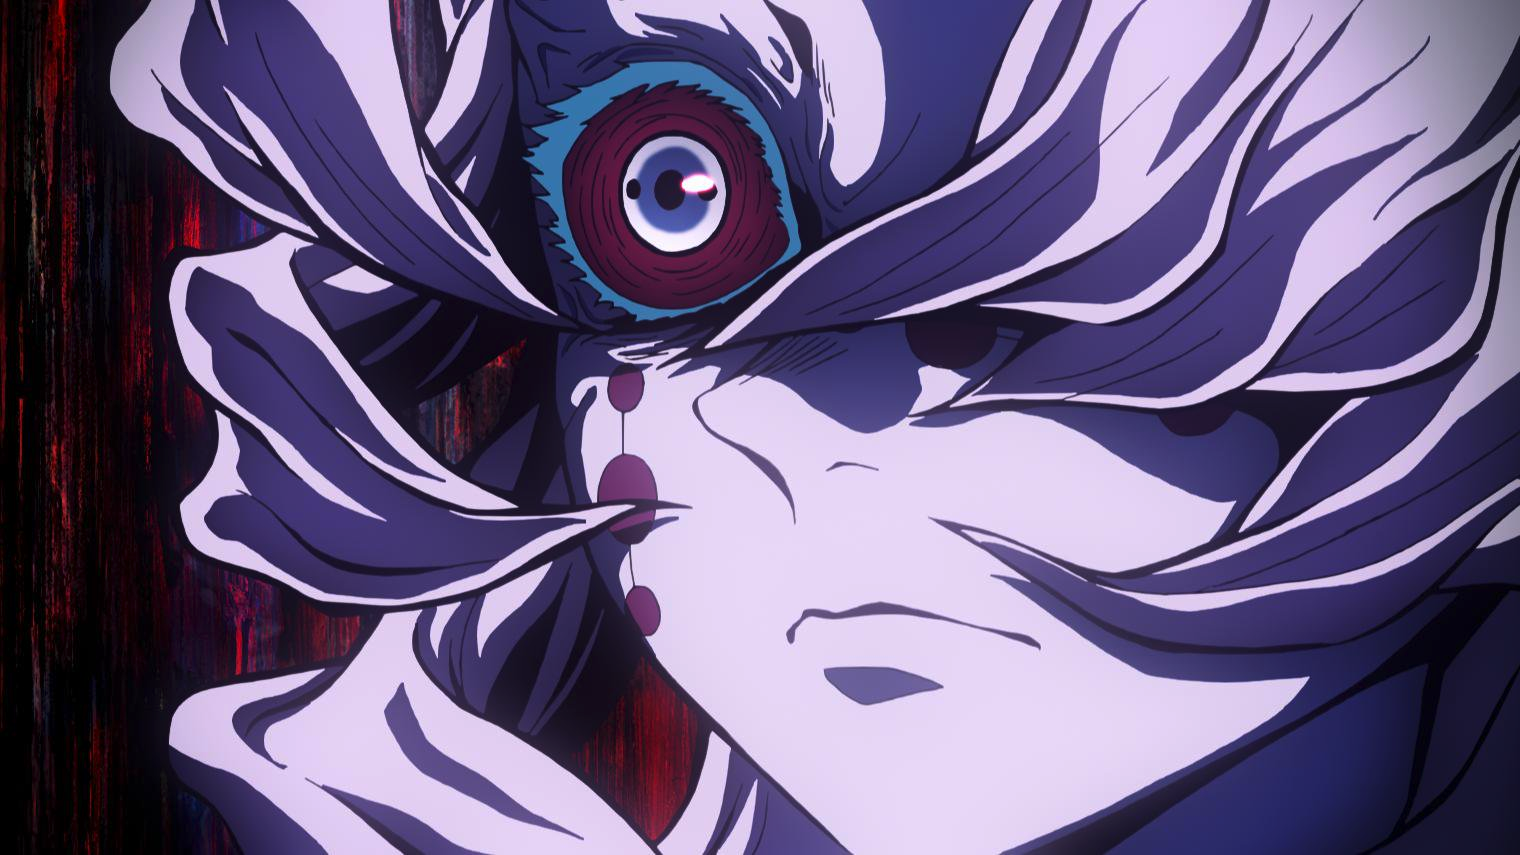 Episode 18 - Demon Slayer: Kimetsu no Yaiba [2019-08-05] - Anime